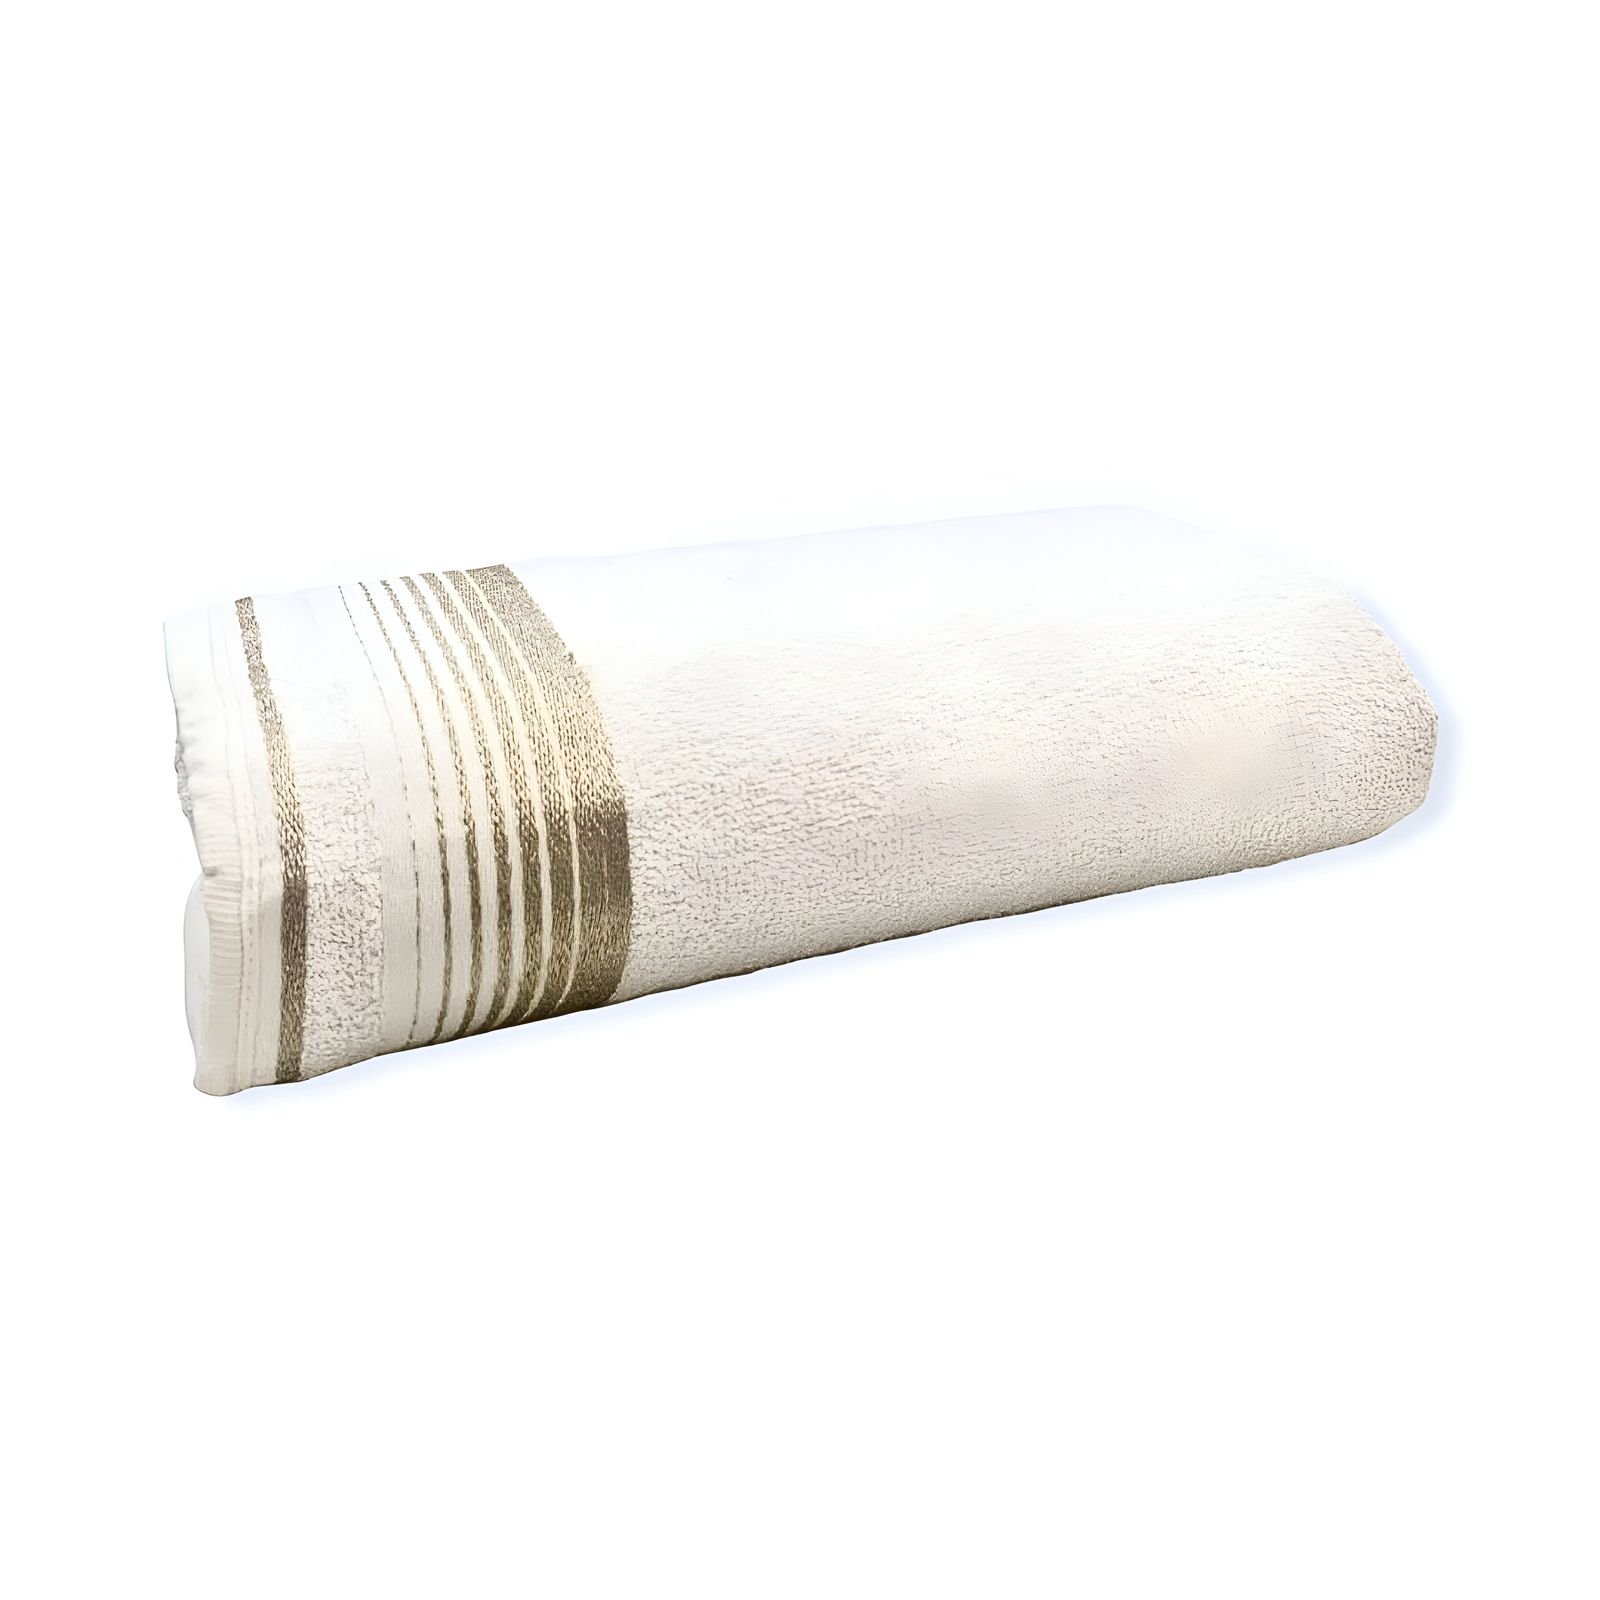 Kit C/ 5 - Toalhas de Banho - Banhão - Luxo - 100% Algodão - Sortido - Brk Brk Têxtil - 7